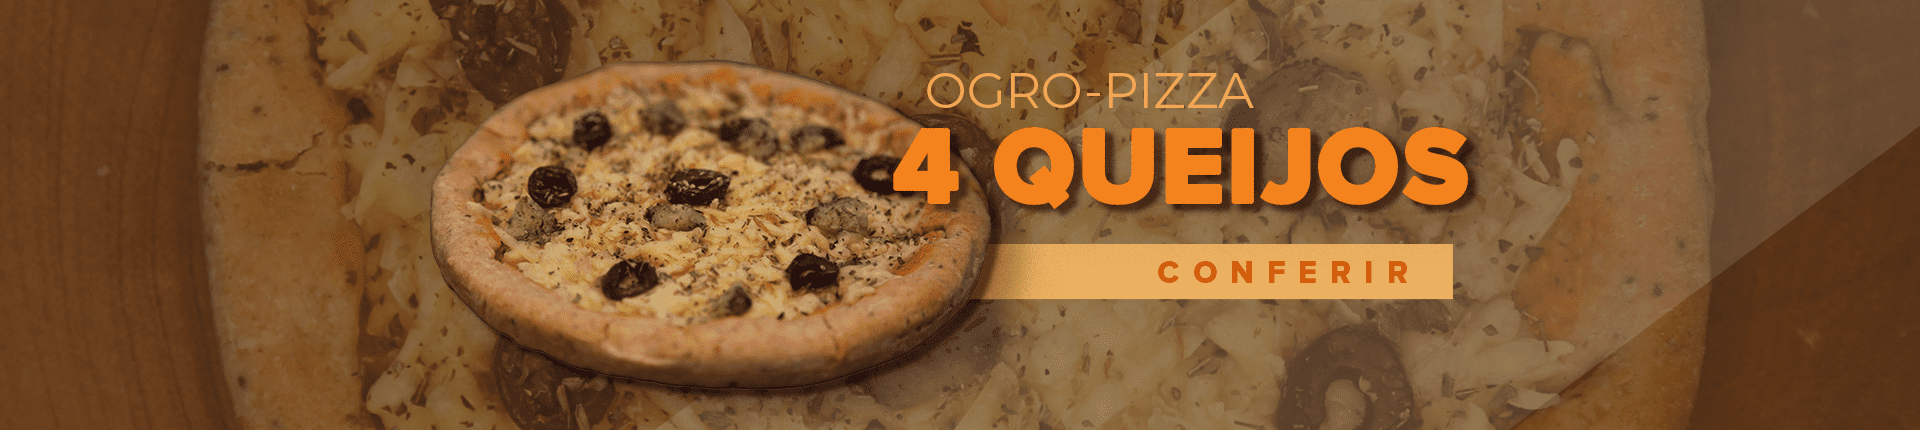 Ogro-pizza 4 Queijos